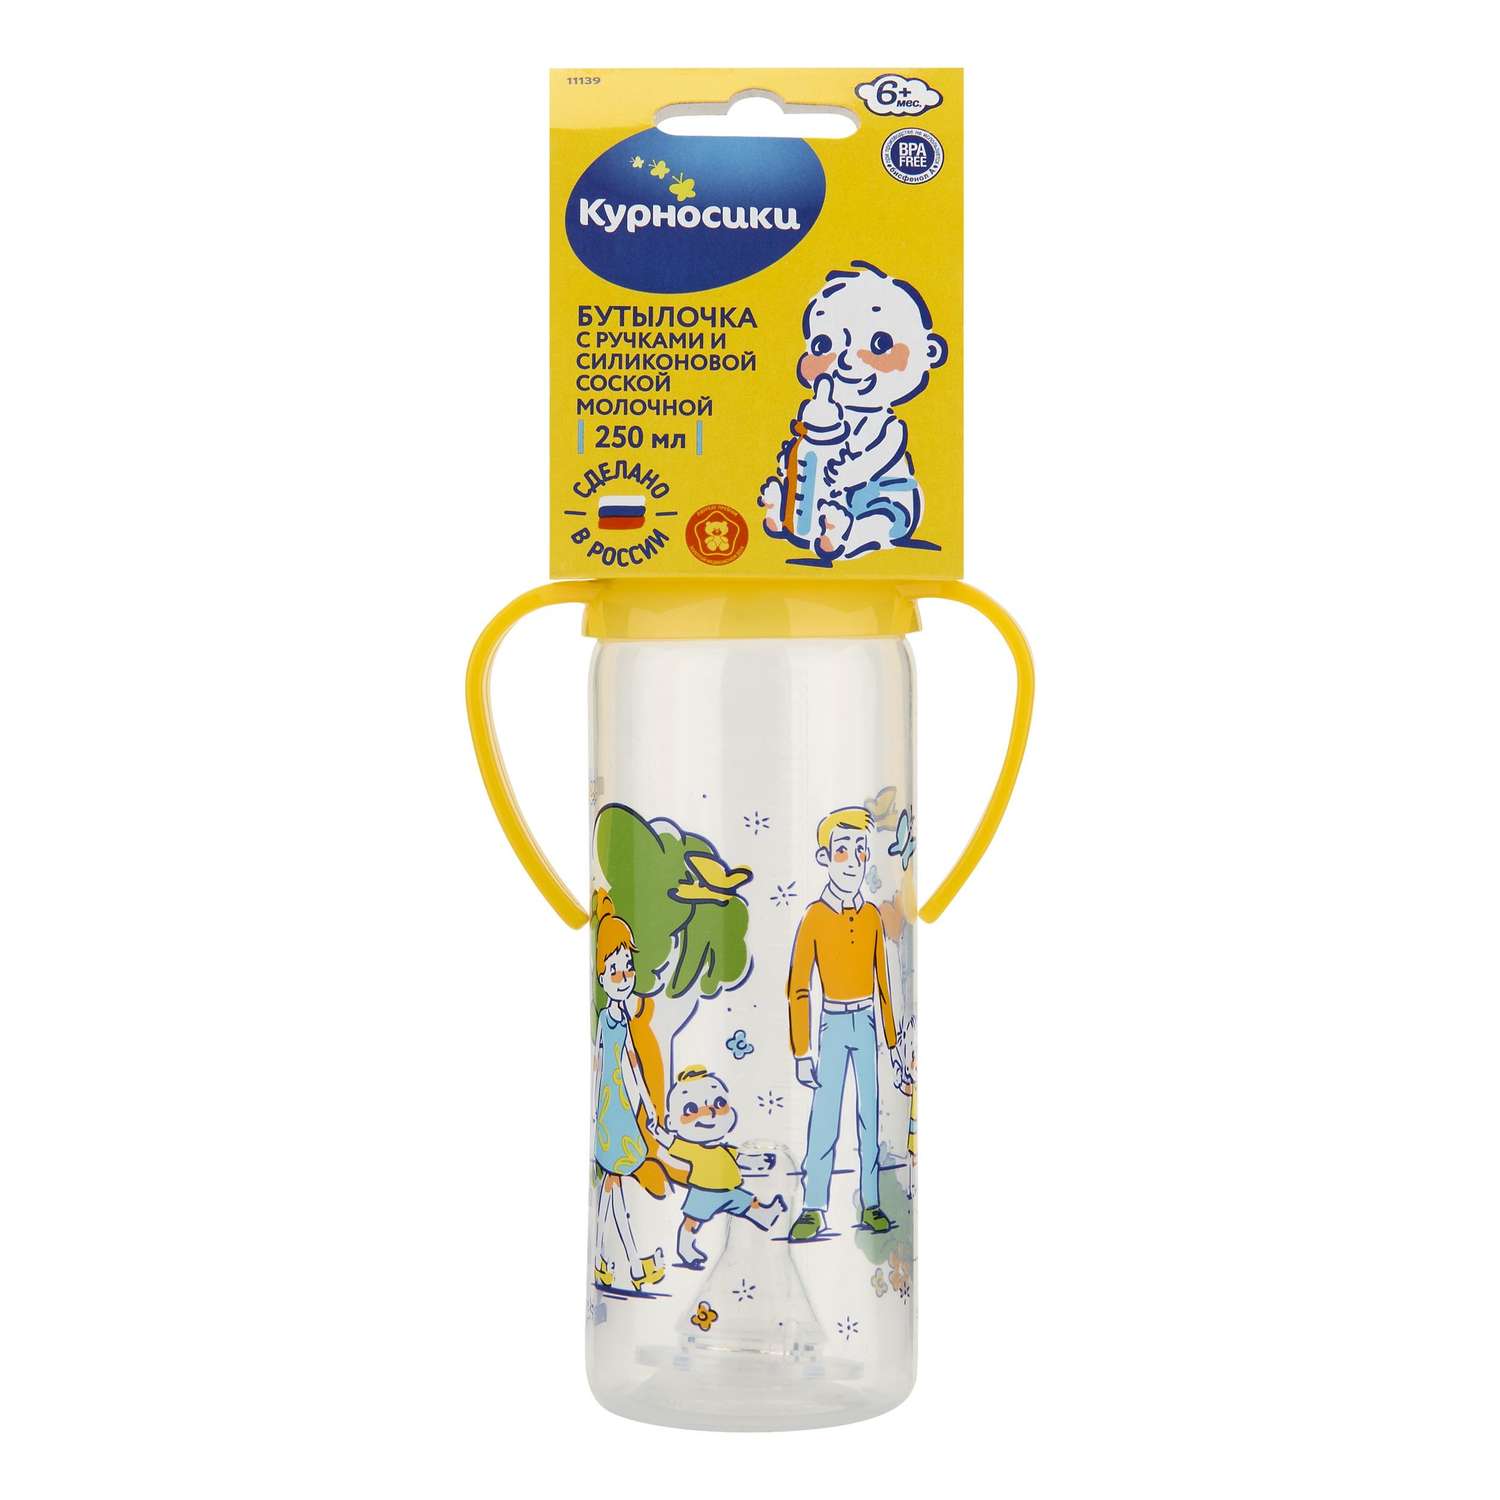 Бутылочка Курносики с ручками с силиконовой соской молочной 250 мл в ассортименте - фото 7